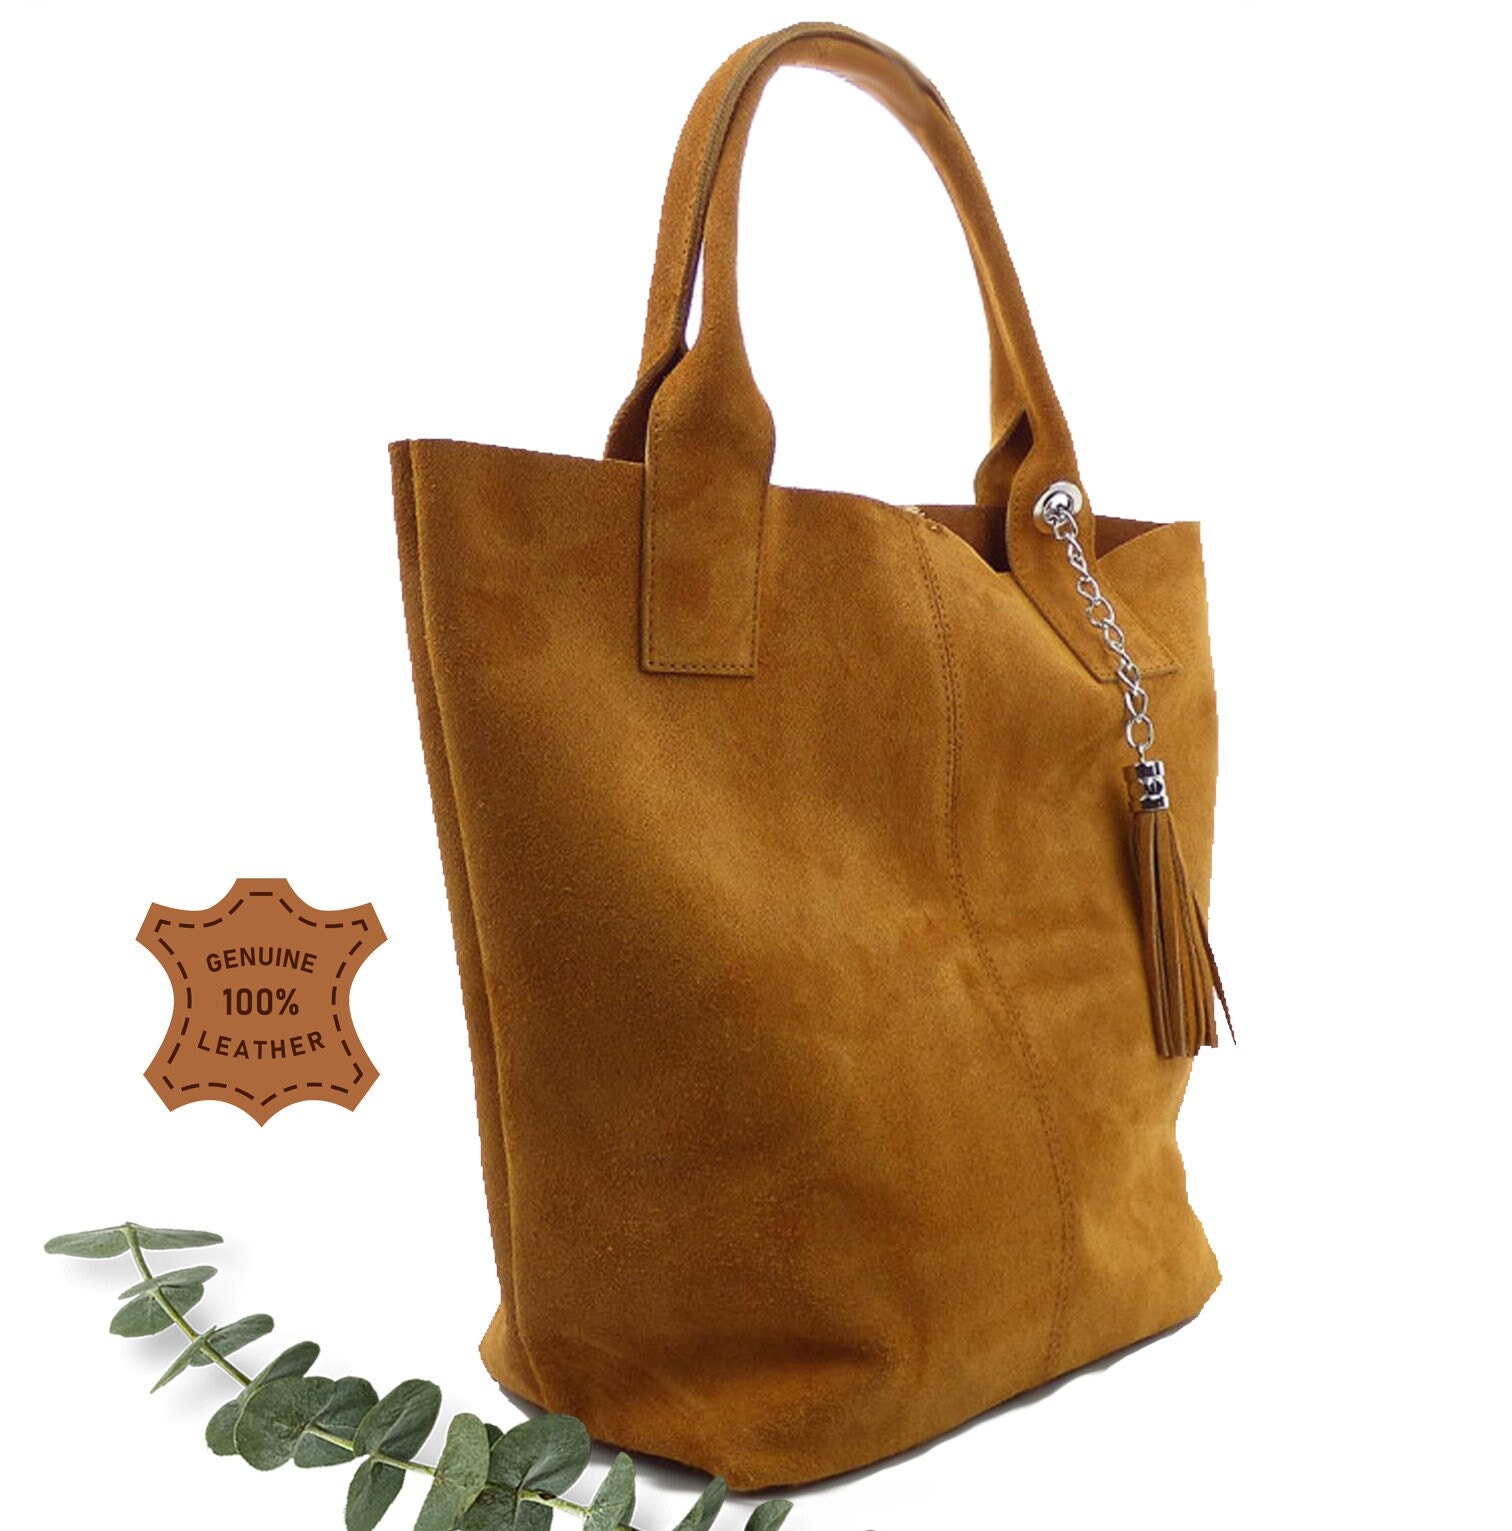 Spring summer 2021 handbag Ba&sh Brown in Suede - 32403733